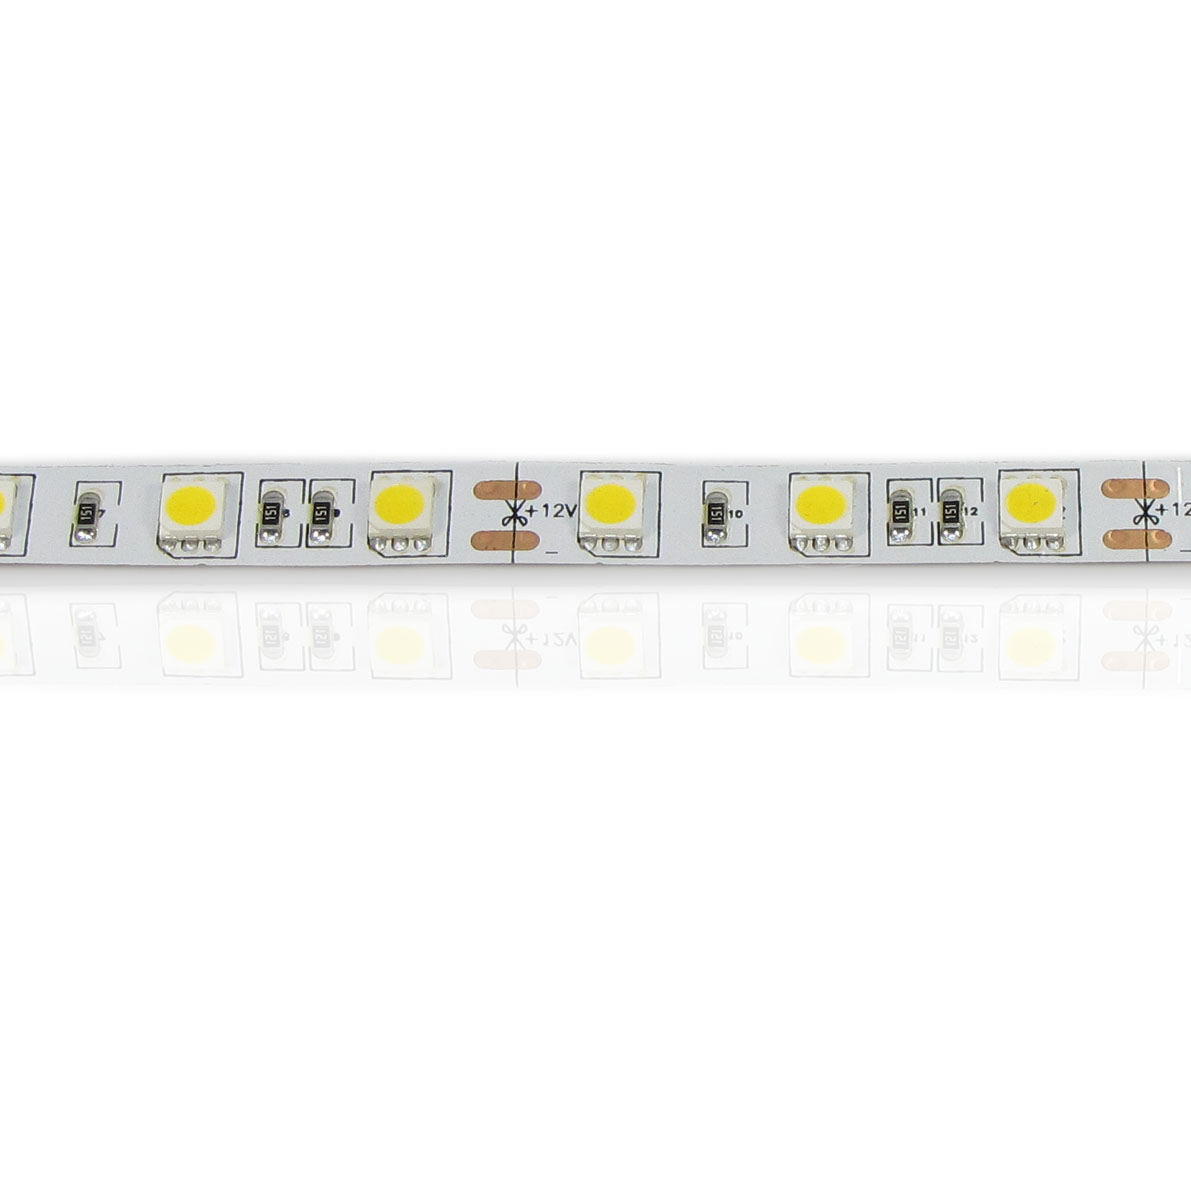 светодиодная лента standart class, 5050, 60led/m, warm white, 12v, ip33, артикул 52717